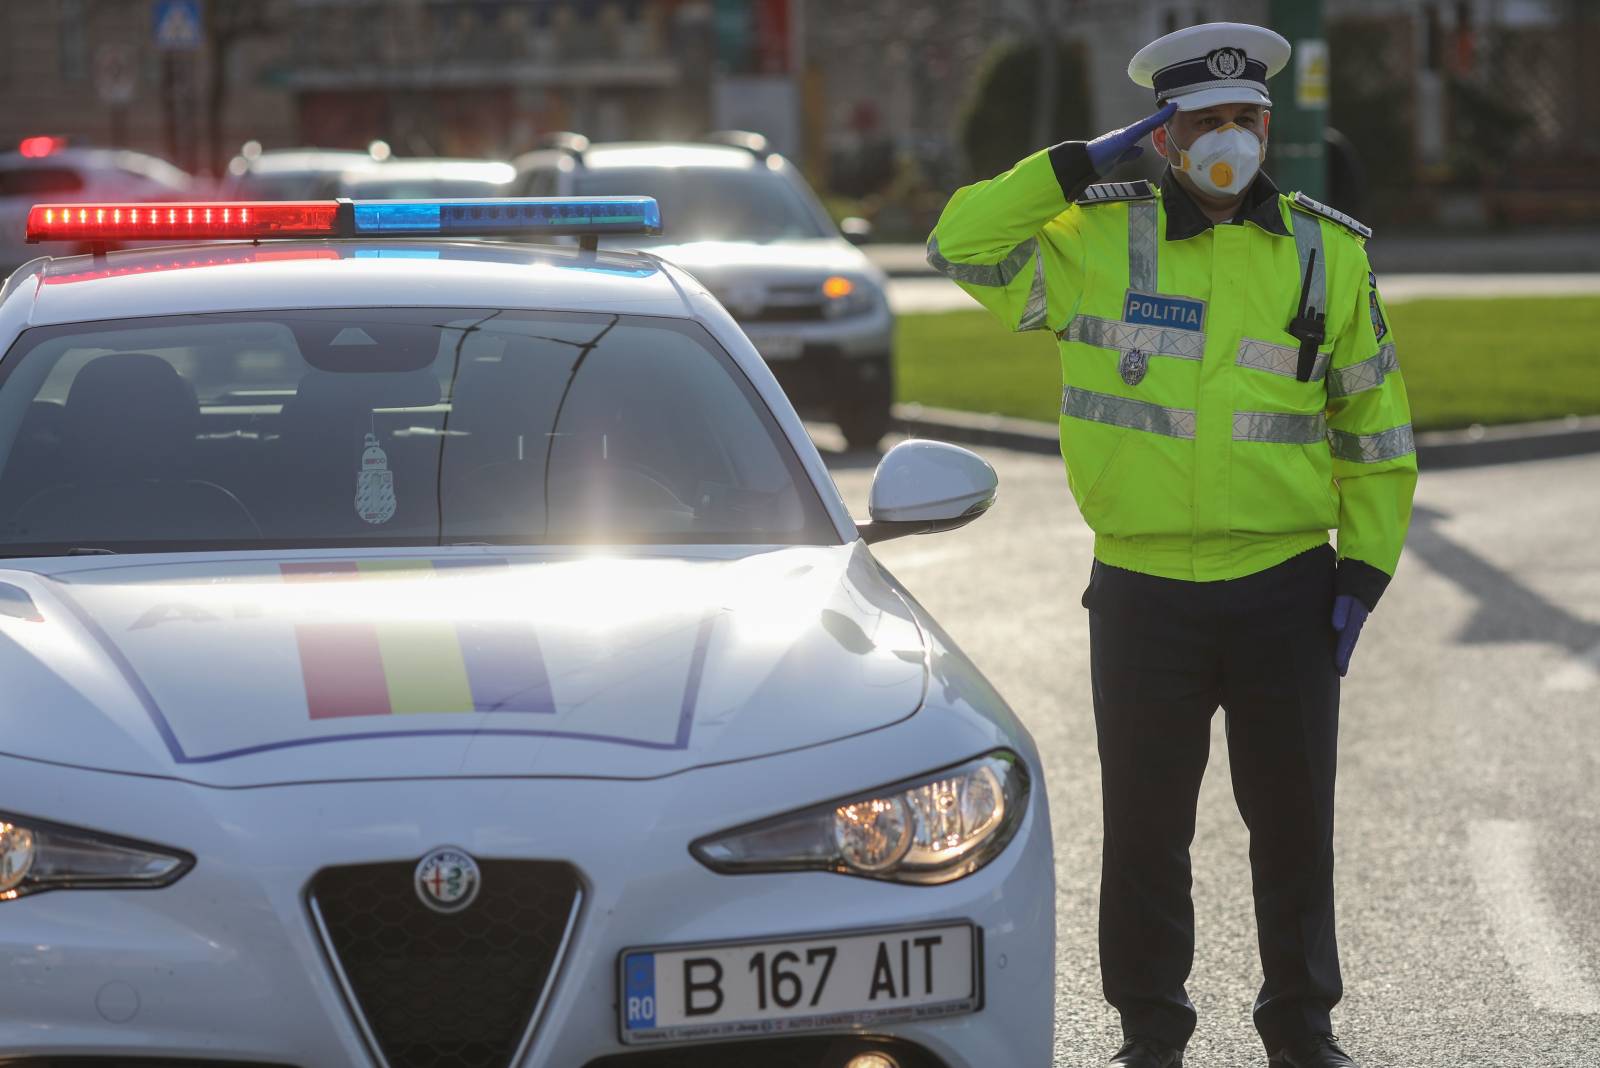 Roemeens politiepaasvoedsel